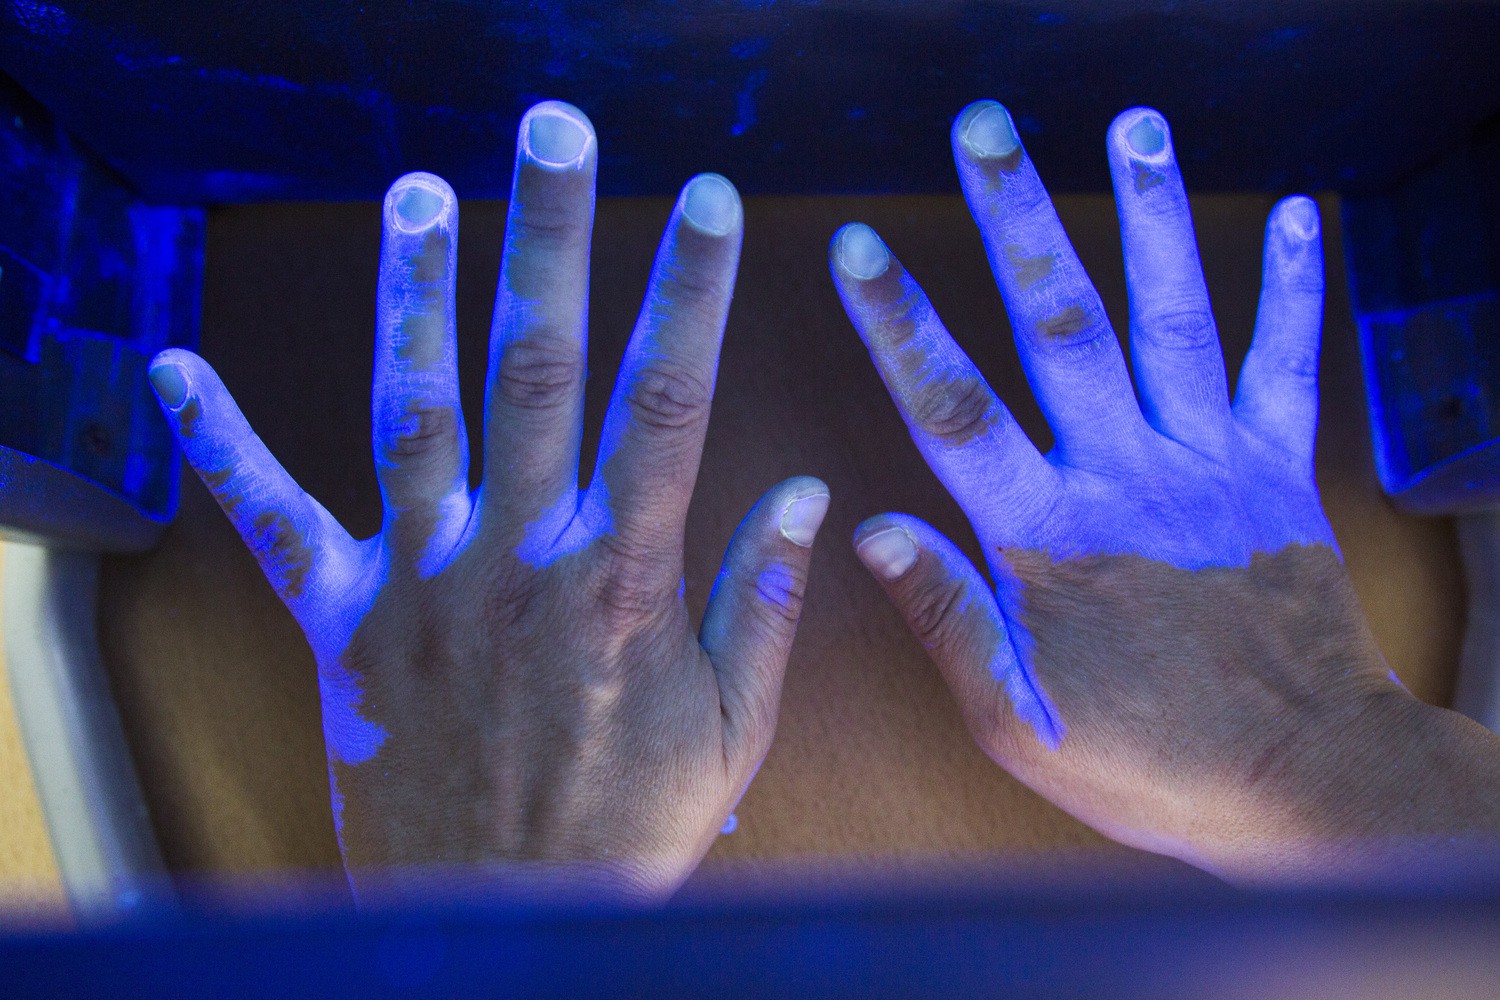 Ein Paar Hände unter UV-Licht: Beim Aktionstag am 5. Mai können Patienten und UKL-Mitarbeiter ihre "Werkzeuge" unter diesem speziellen Licht prüfen lassen.